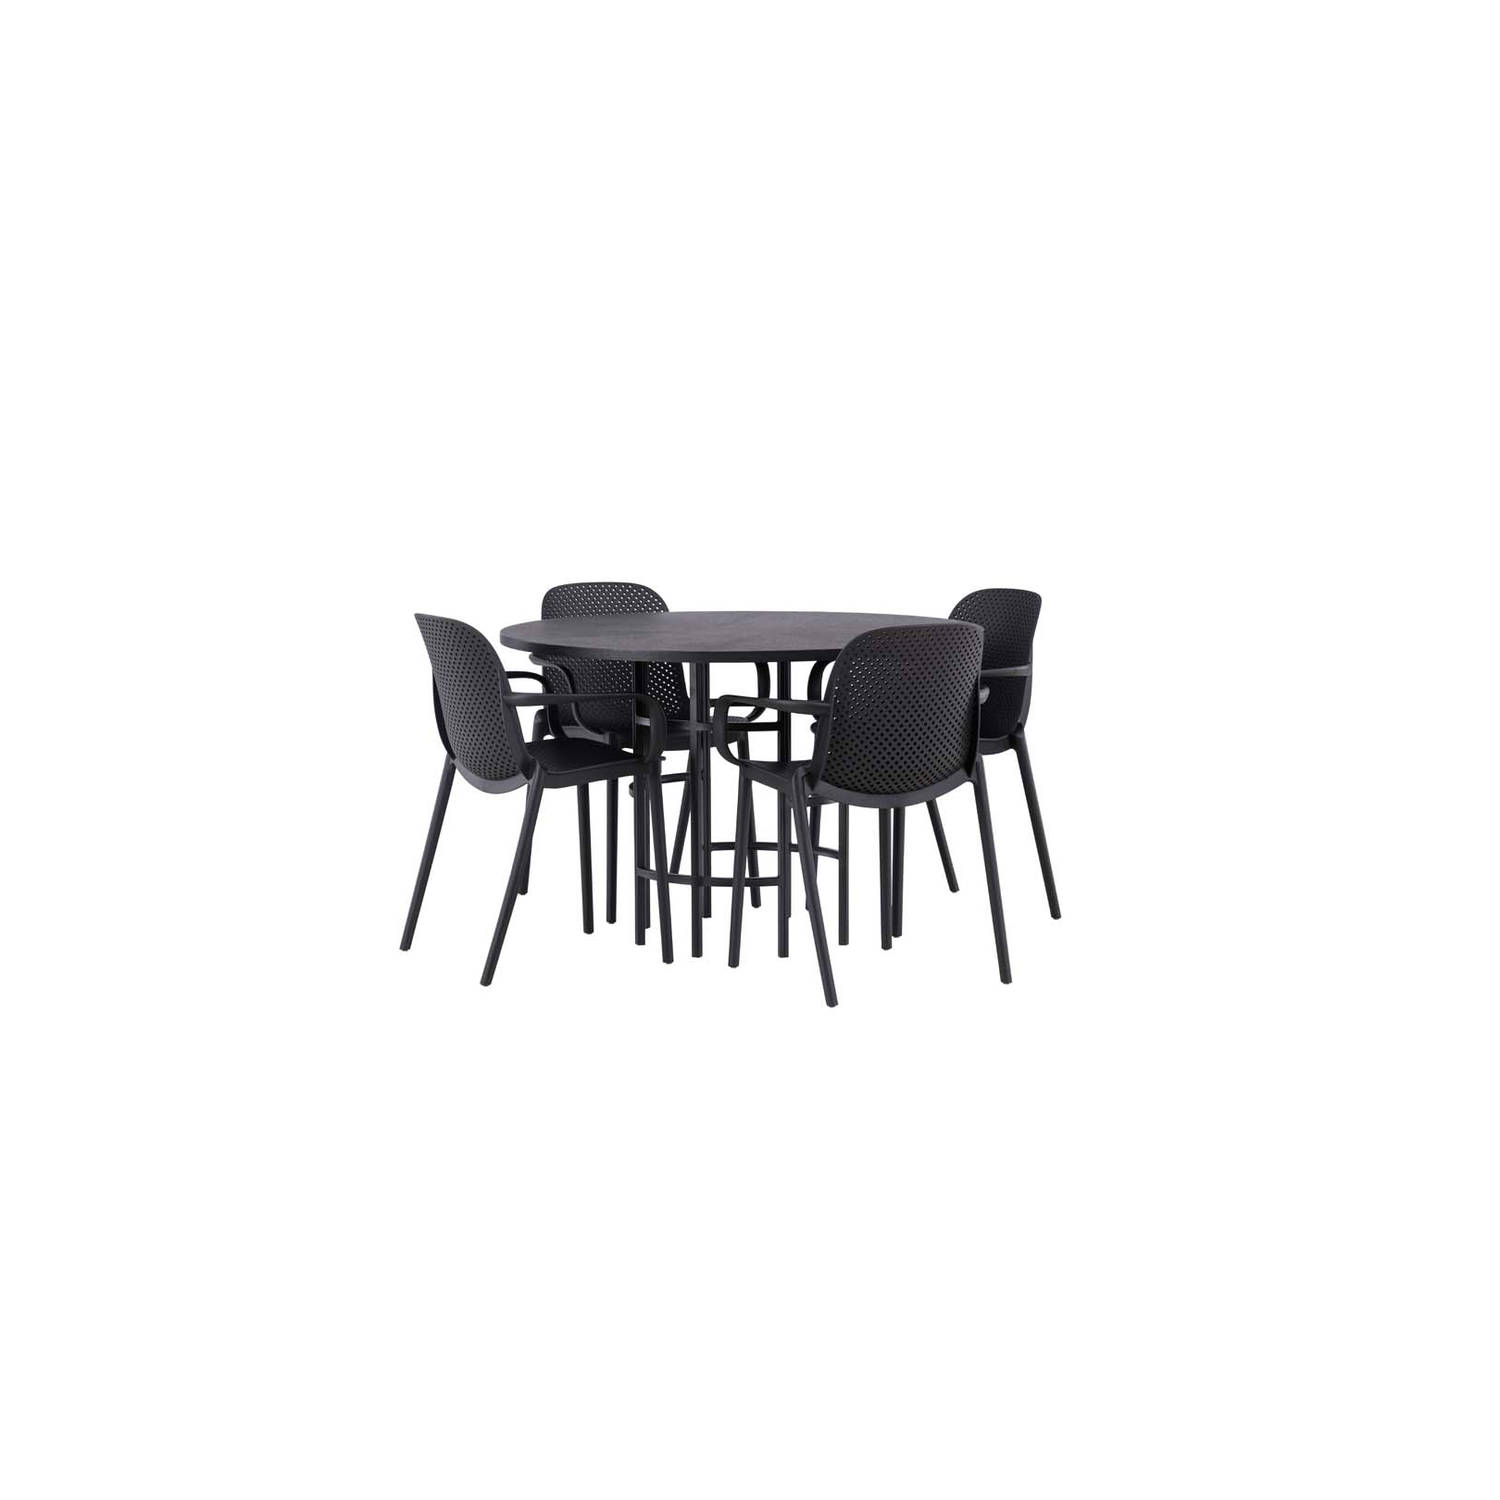 Copenhagen eethoek tafel zwart en 4 baltimore stoelen zwart.